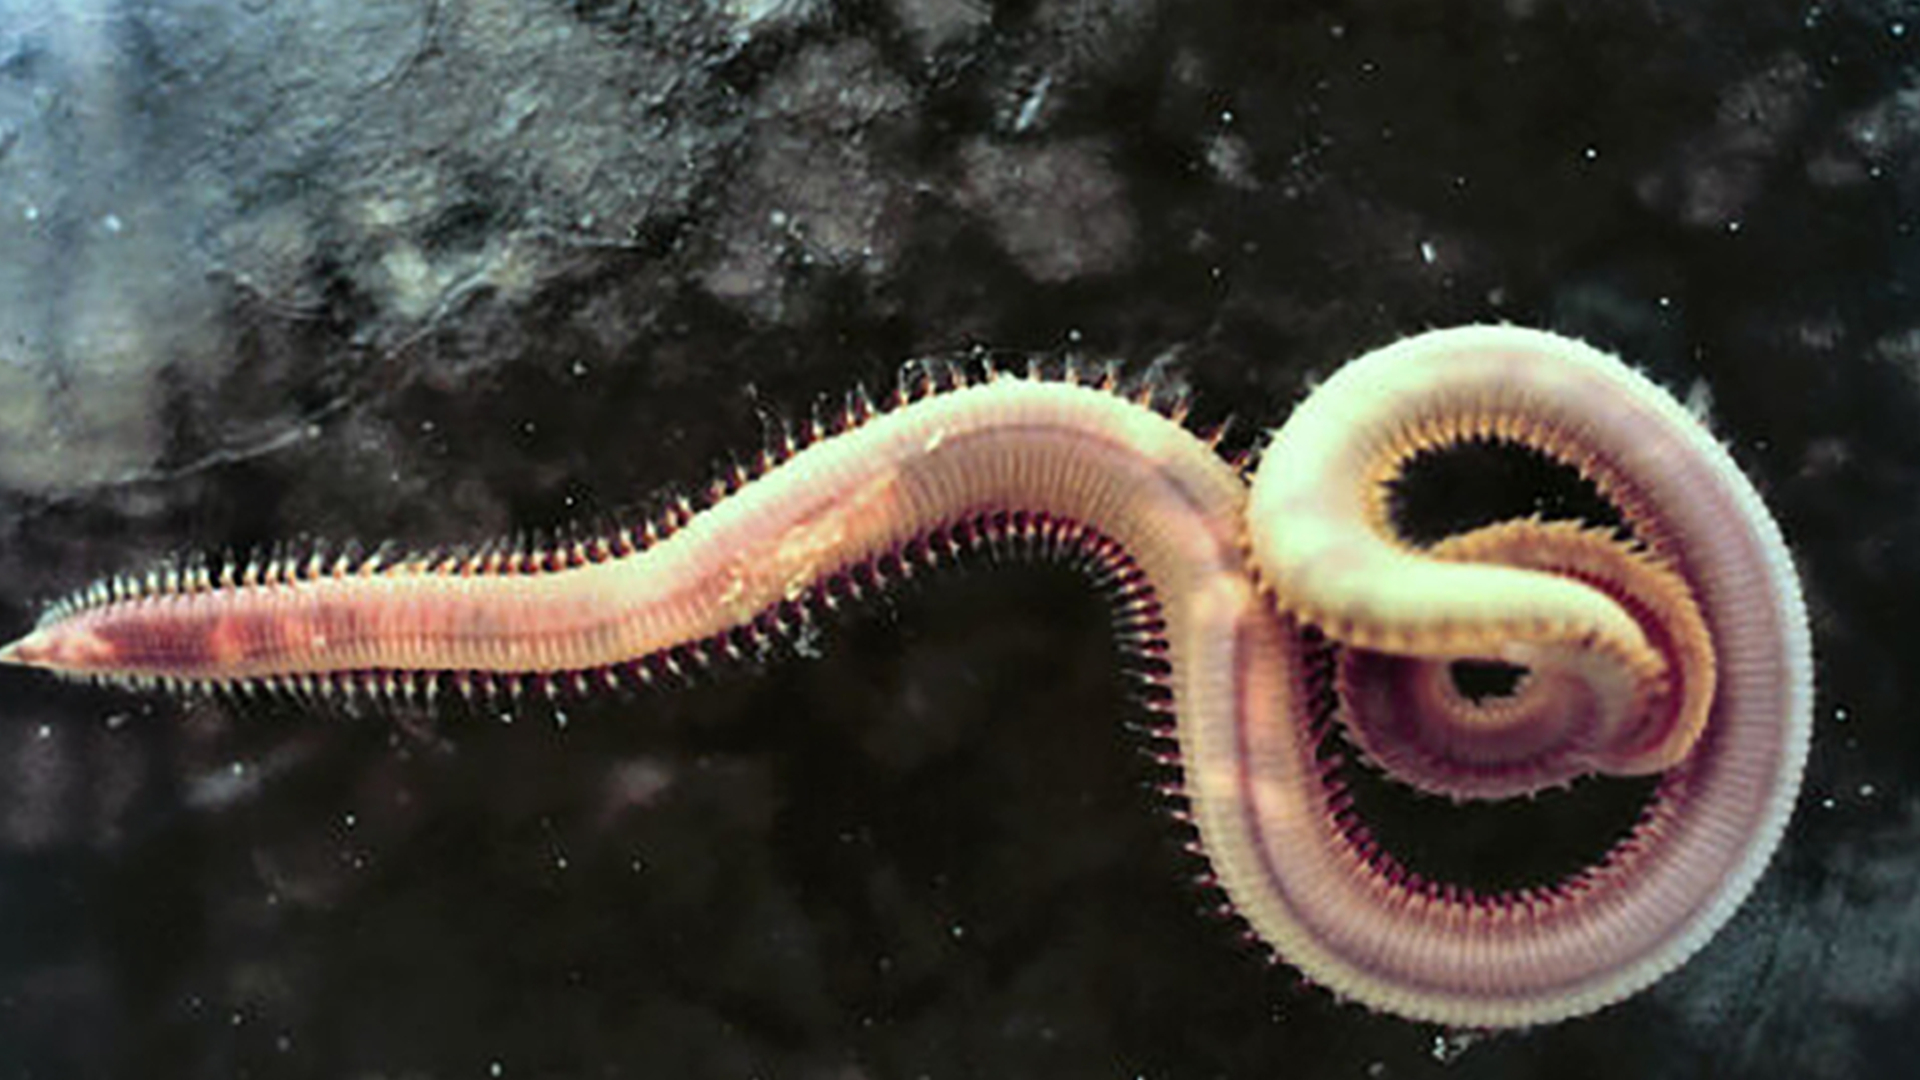 食骨蠕虫在拉丁语中是"食骨者"的意思,这是对一种海洋生物属的恰当